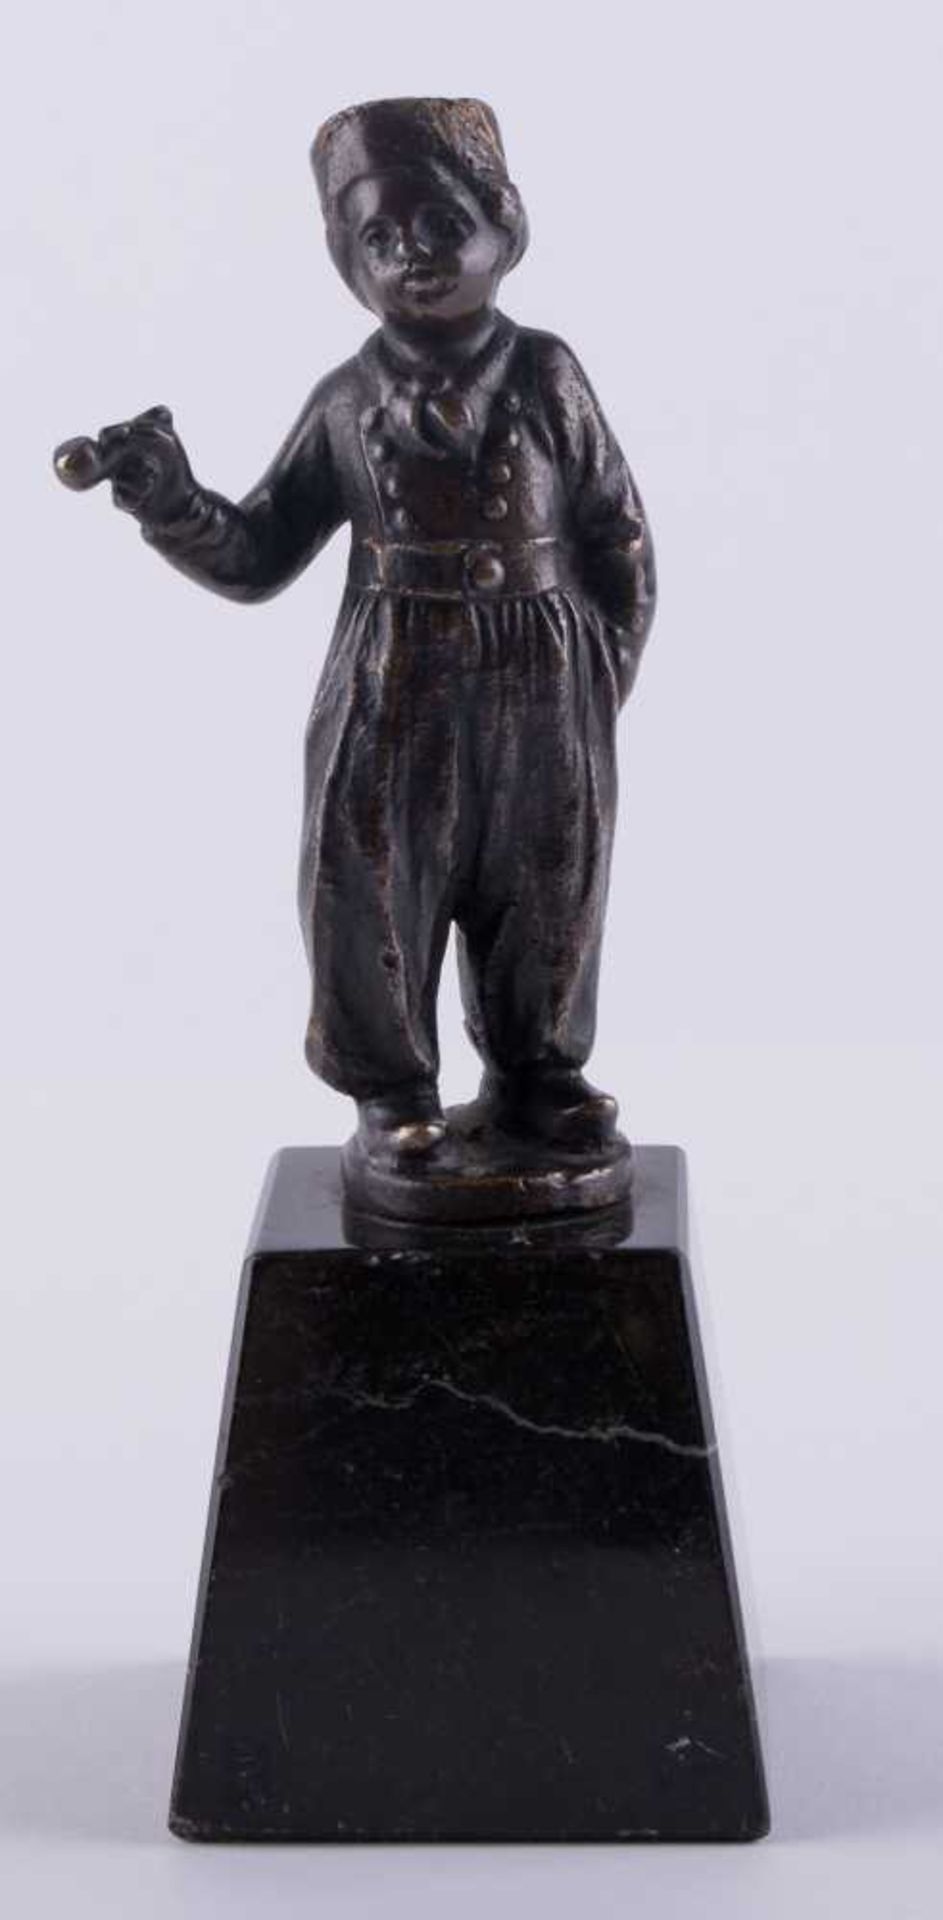 unbekannter Bildhauer des 19./20. Jhd. / Unidentified sculptor, 19th/20th century "Pfeife rauchender